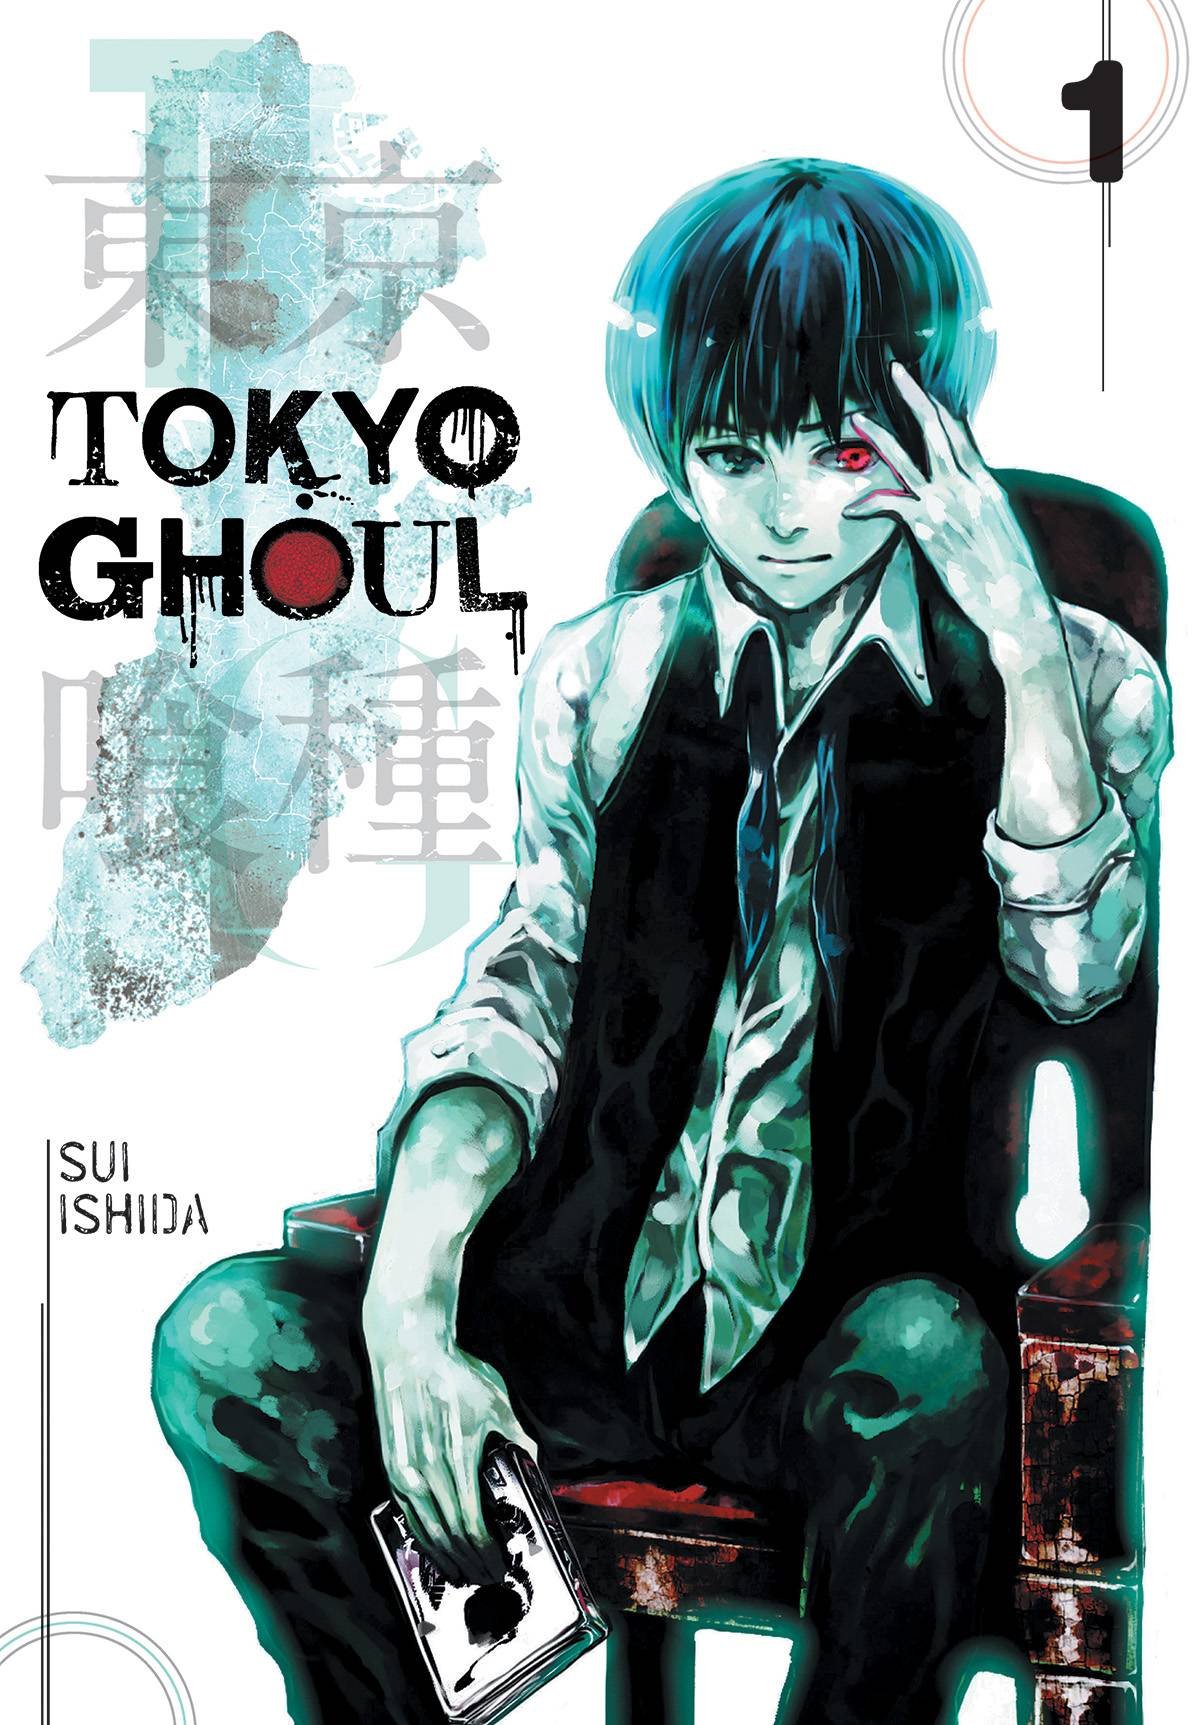 Tokyo Ghoul - Vol. 1